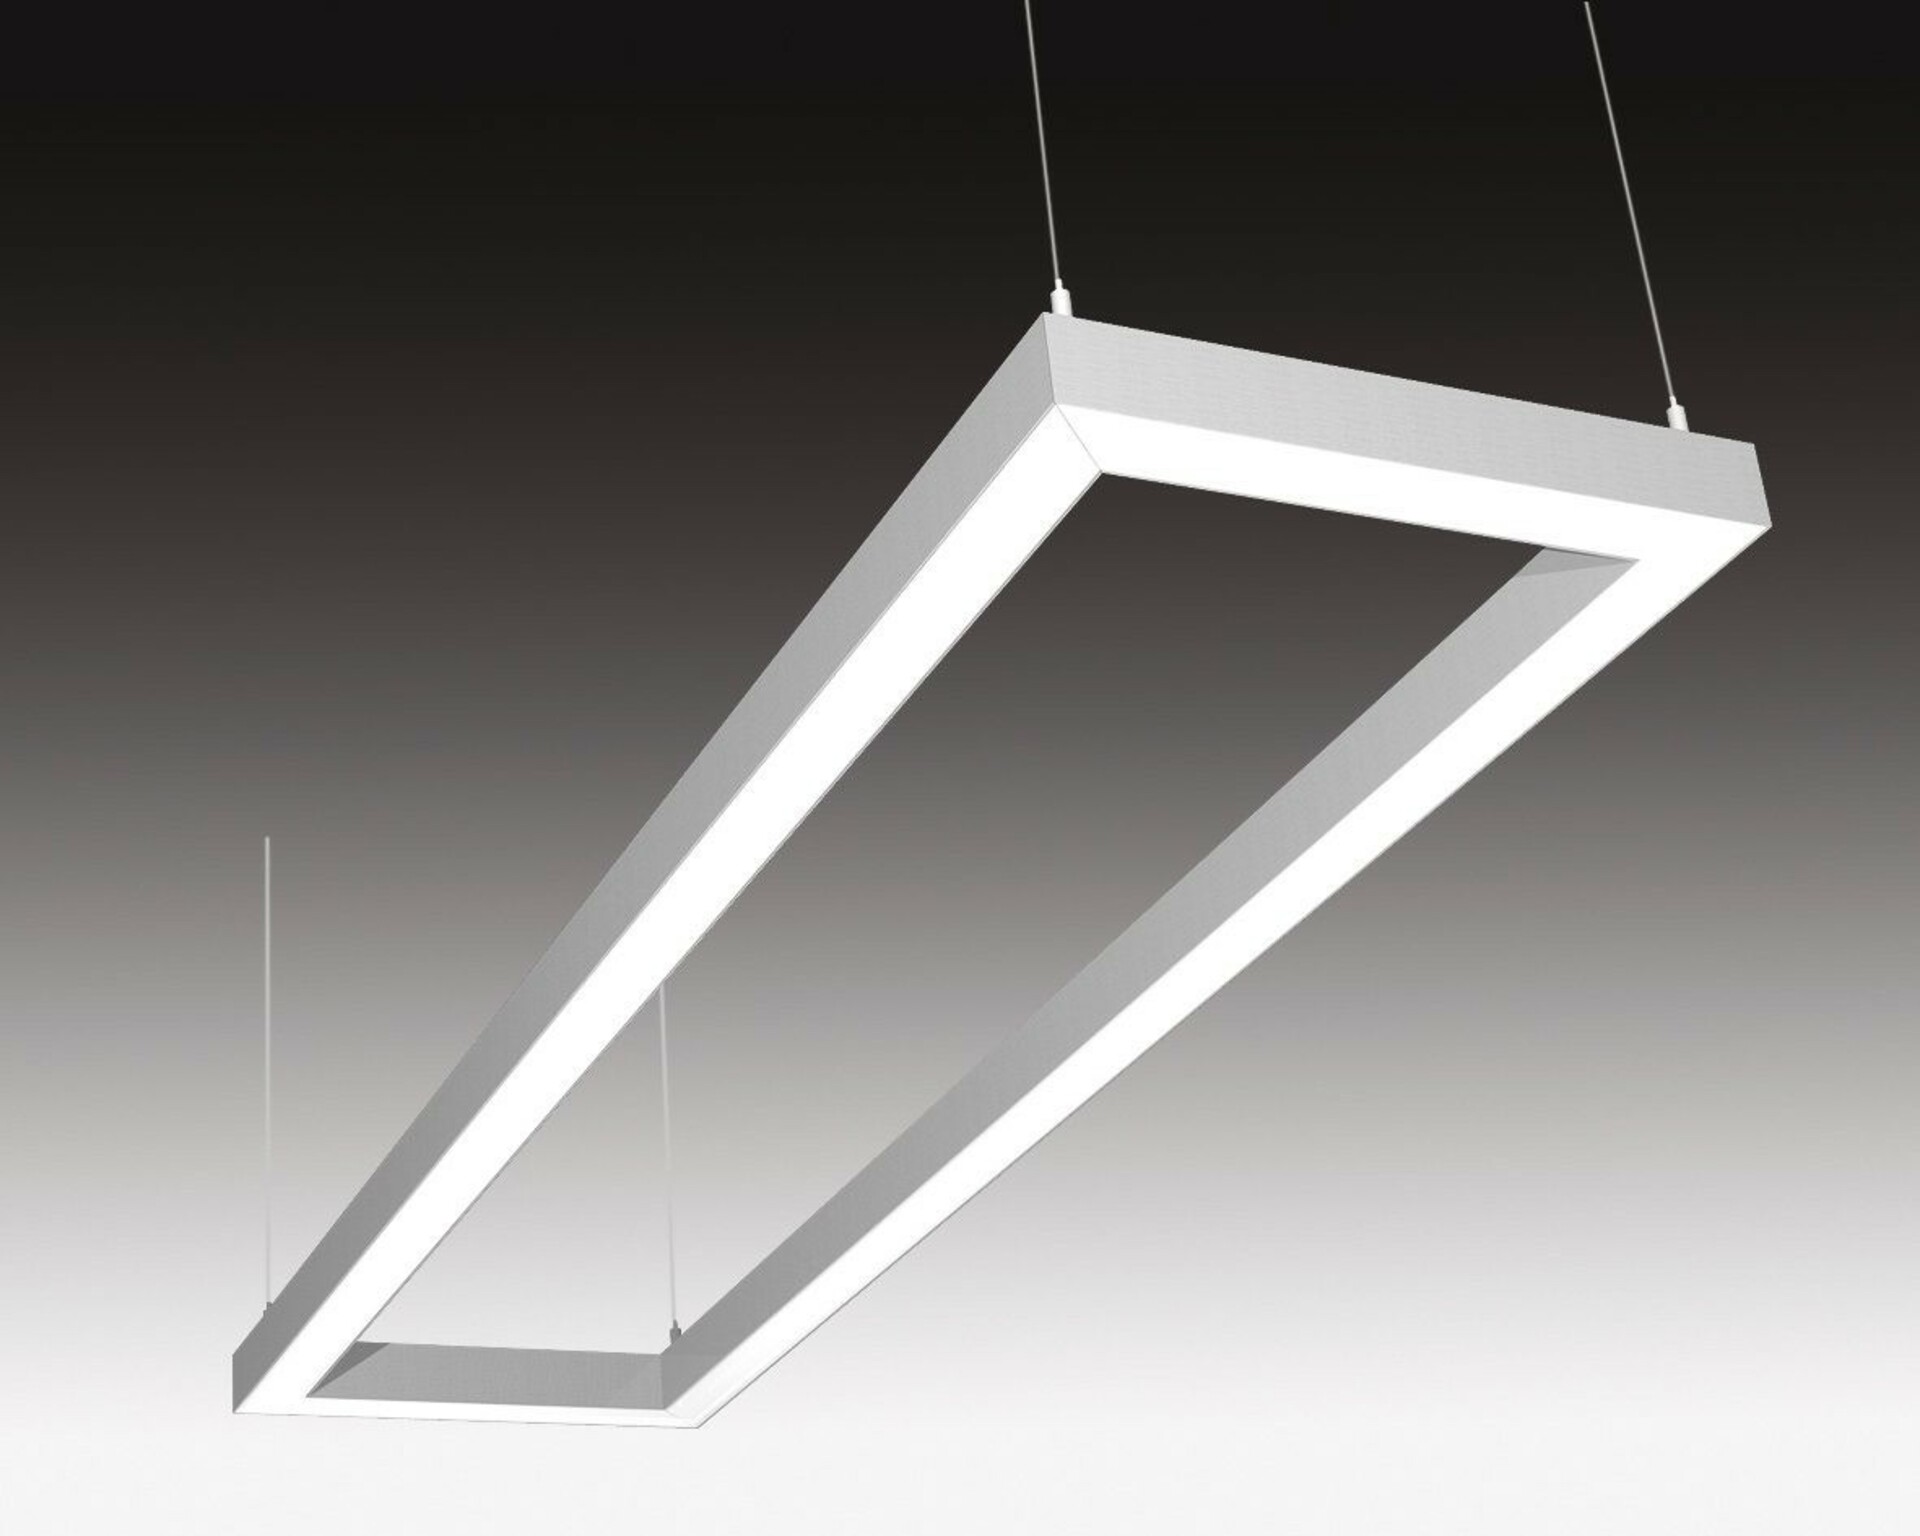 SEC Stropní nebo závěsné LED svítidlo s přímým osvětlením WEGA-FRAME2-DA-DIM-DALI, 72 W, eloxovaný AL, 1165 x 330 x 50 mm, 3000 K, 9500 lm 322-B-109-01-00-SP